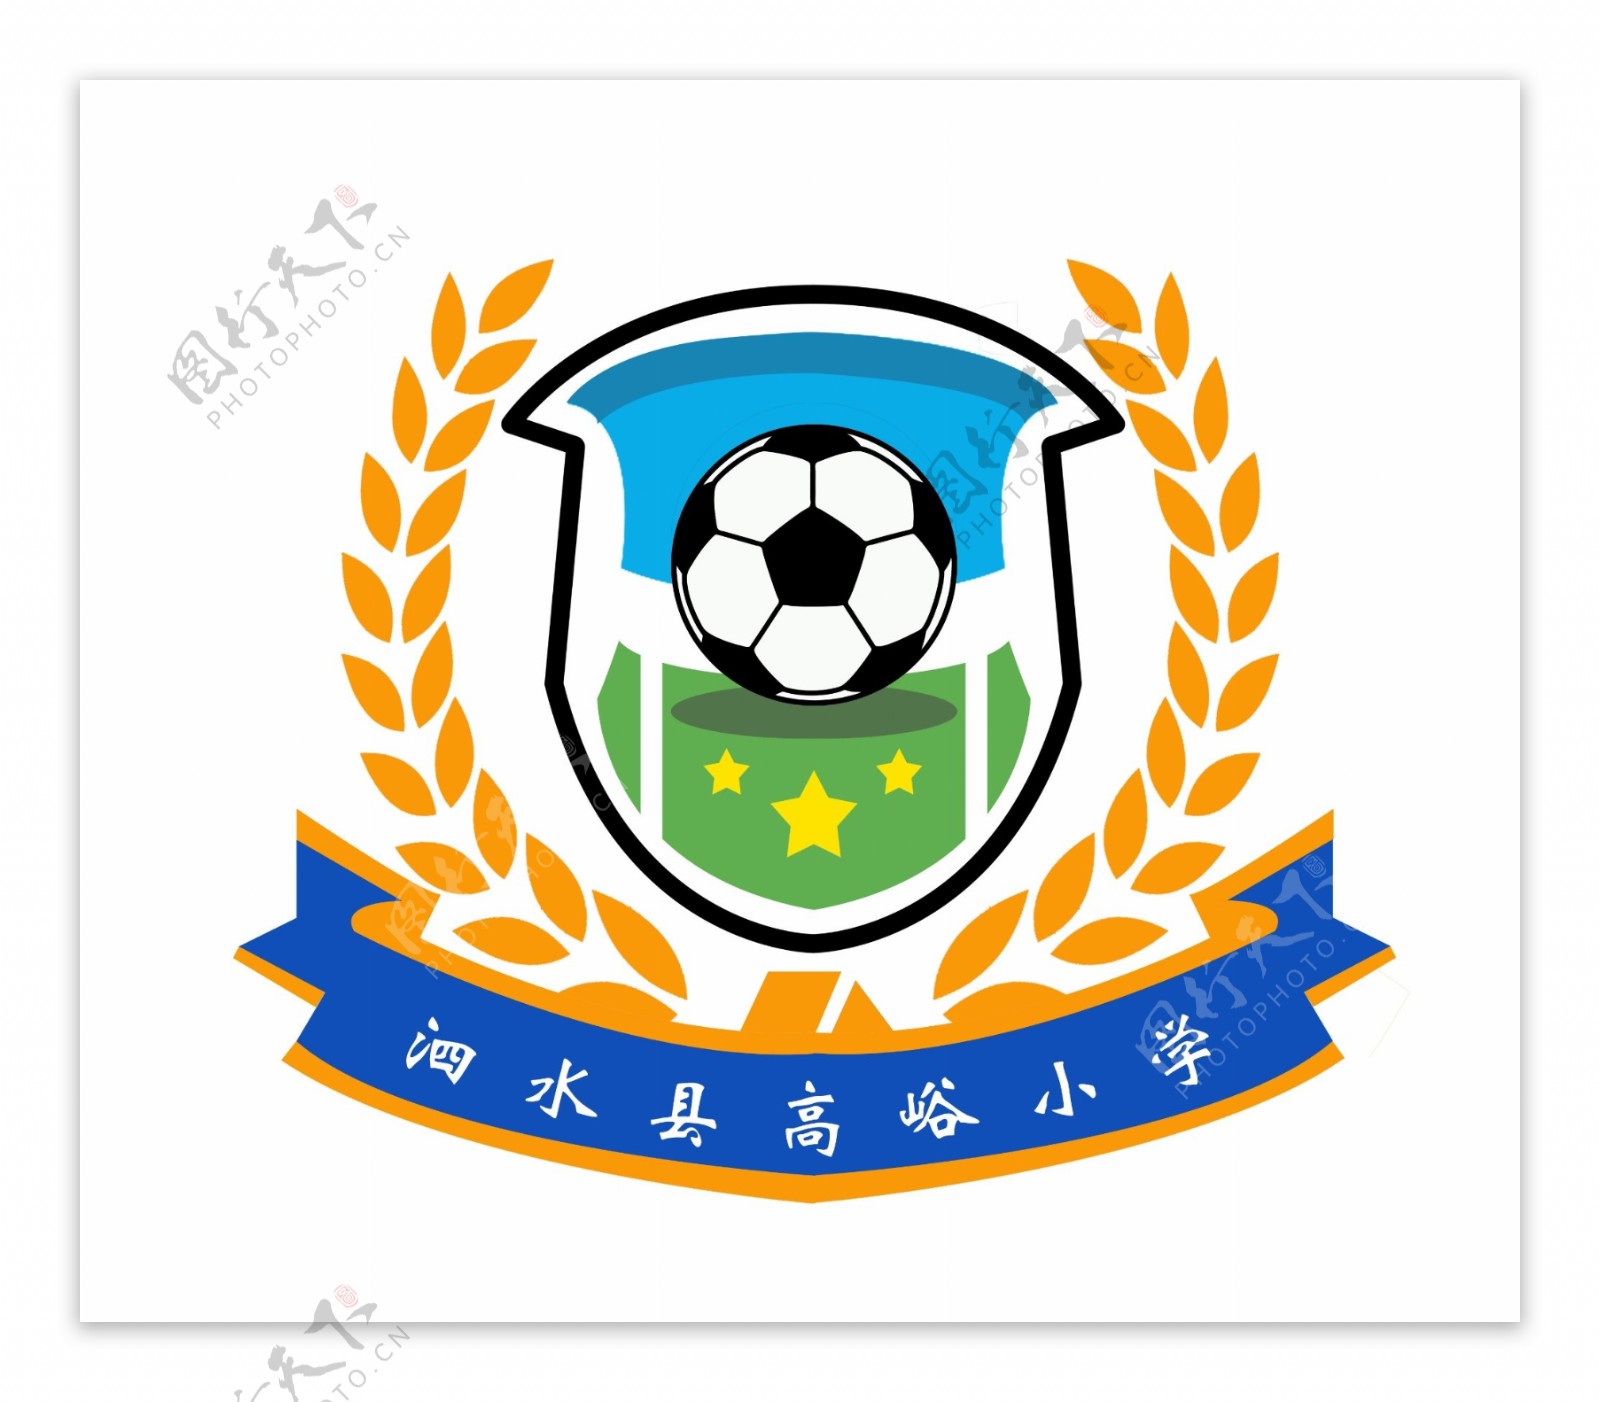 足球队标队徽